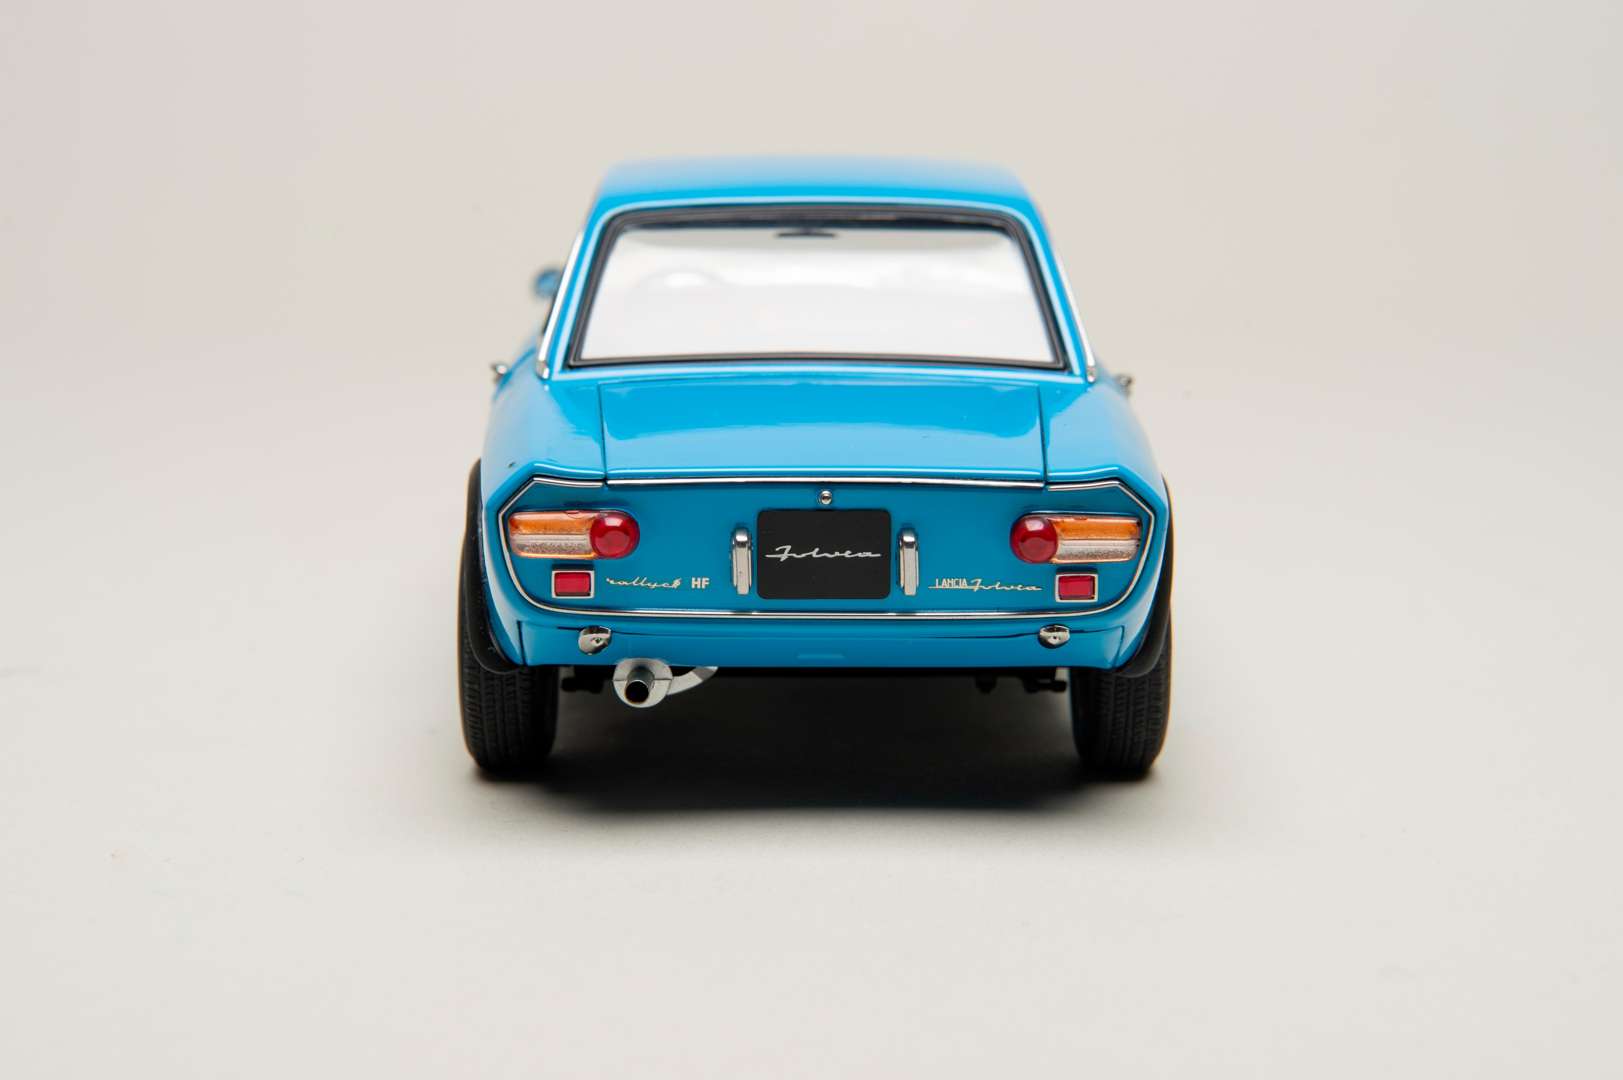 <blockquote><p>AUTOART MILLENIUM, Lancia, 1965, Fulvia, 1.6HF, Fanalone</p></blockquote>